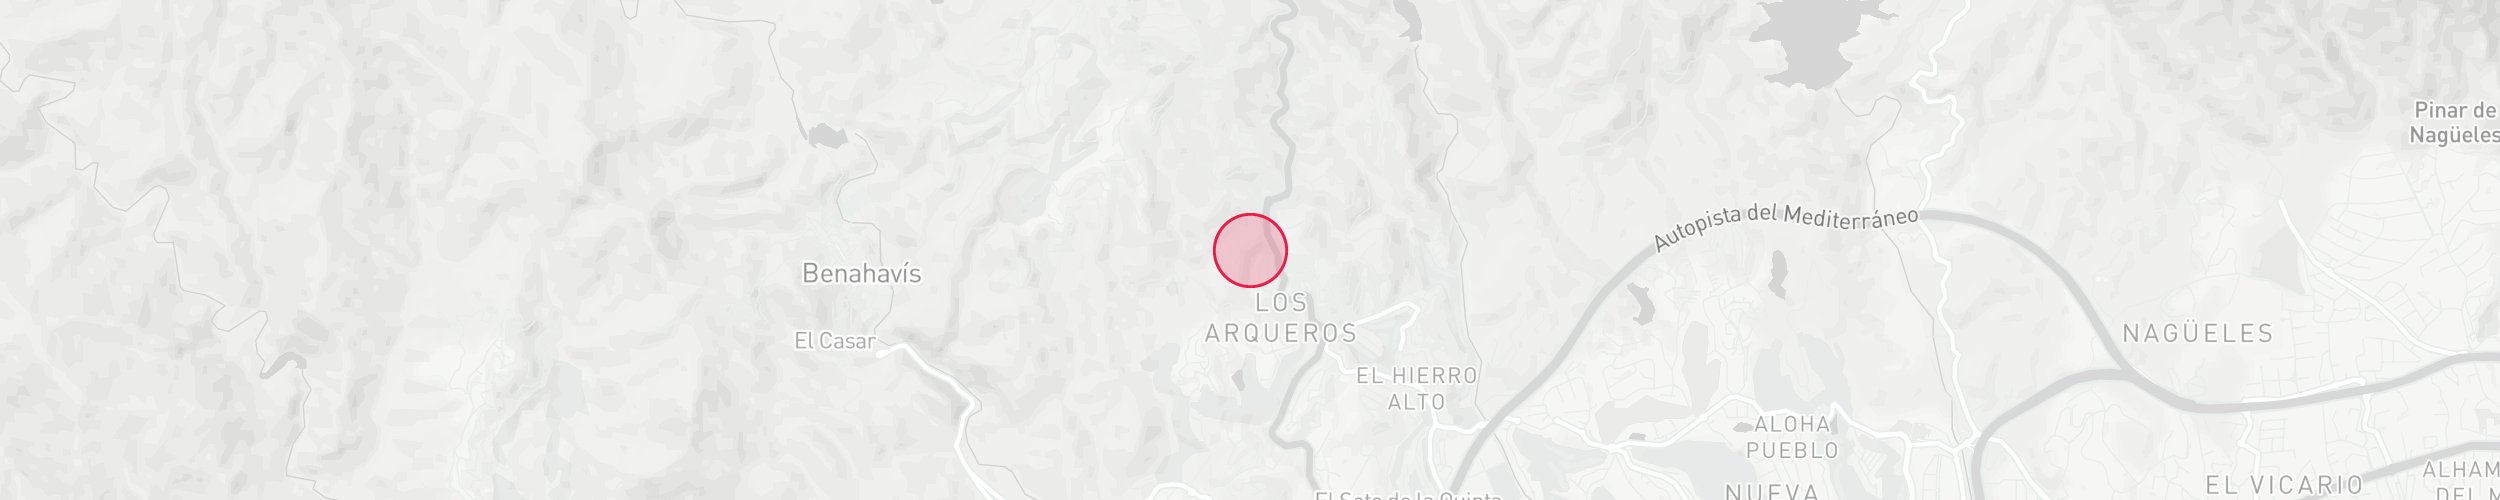 Mapa de localización de la propiedad - La Reserva de Alcuzcuz